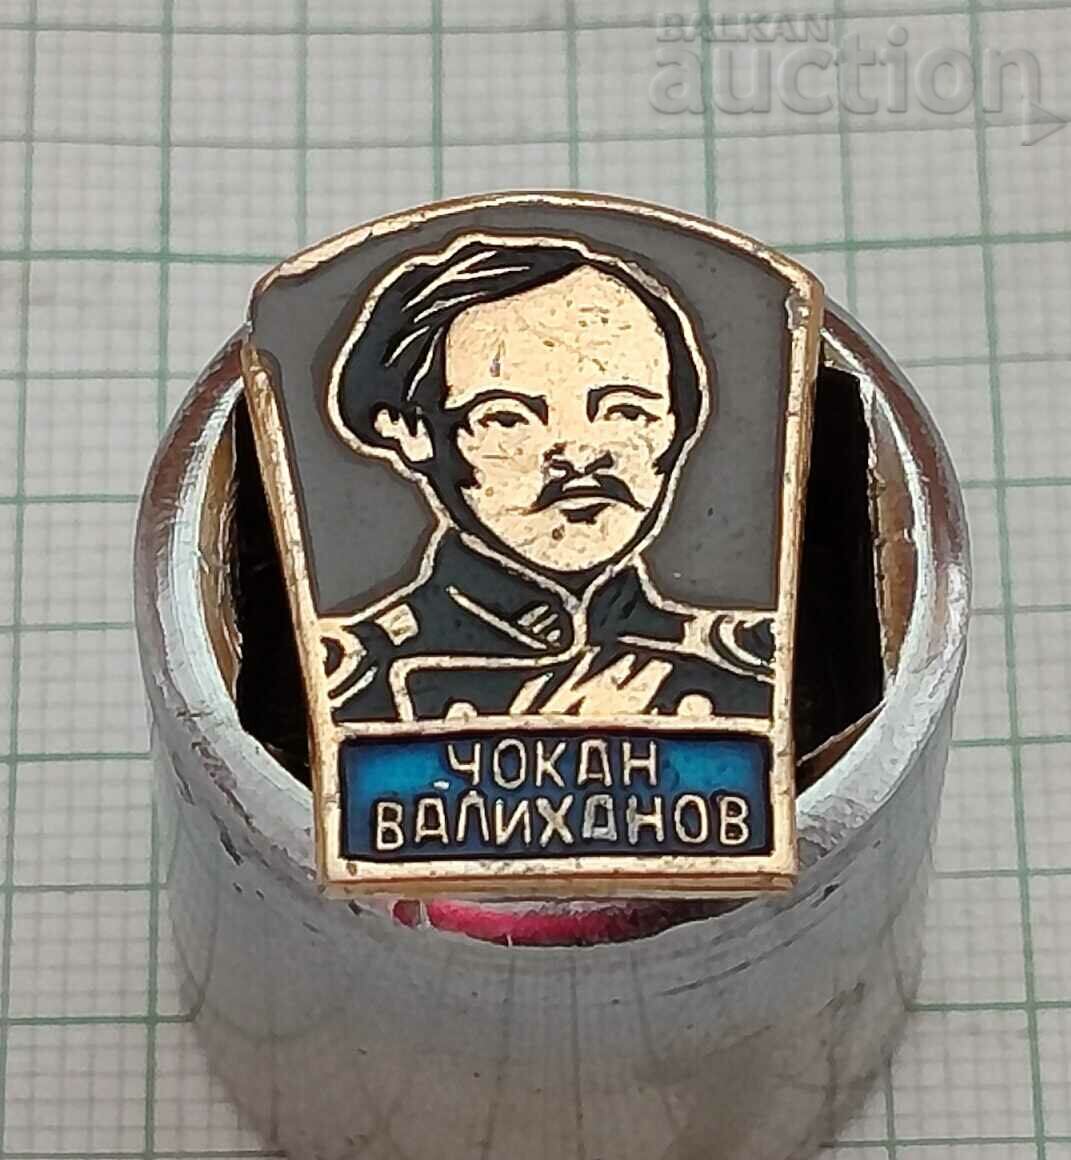 CHOKAN VALIKHANOV KAZAKHSTAN HISTORIAN BADGE